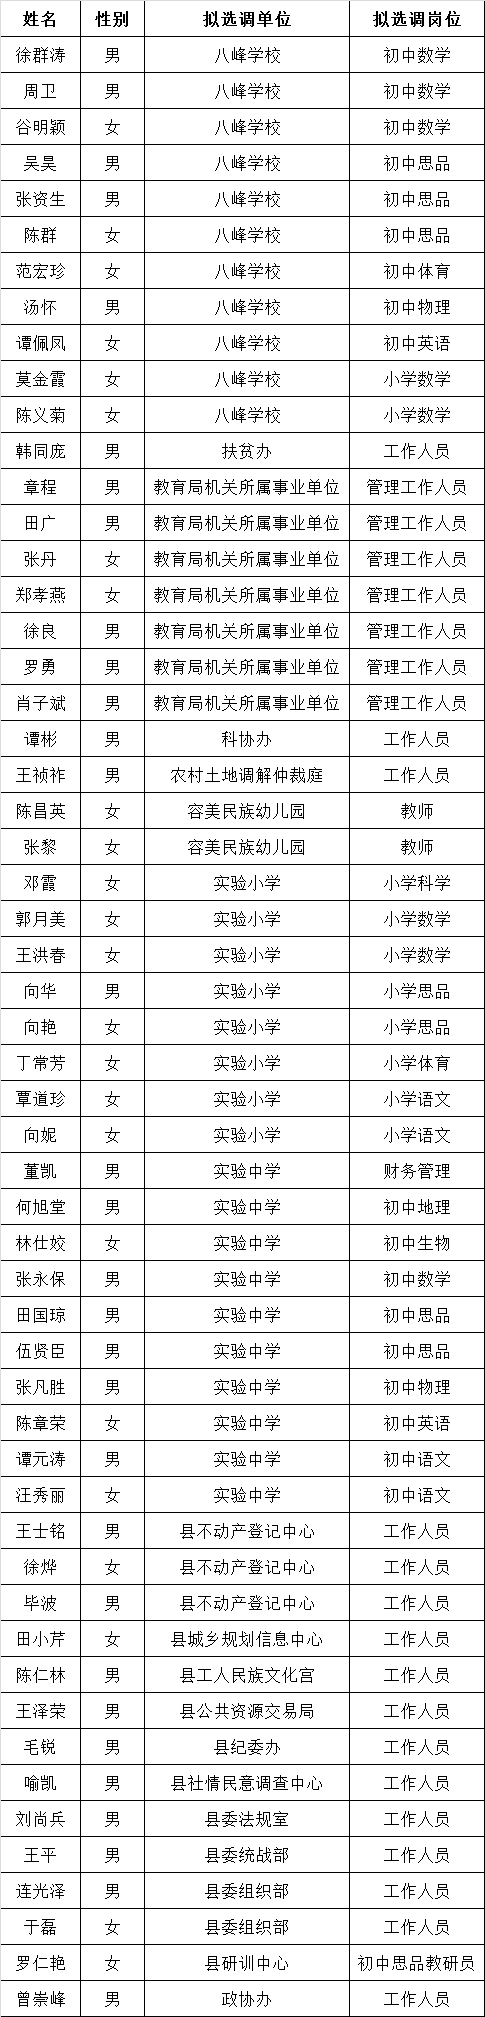 鹤峰县2016年第二次拟公开选调工作人员名单公示.png